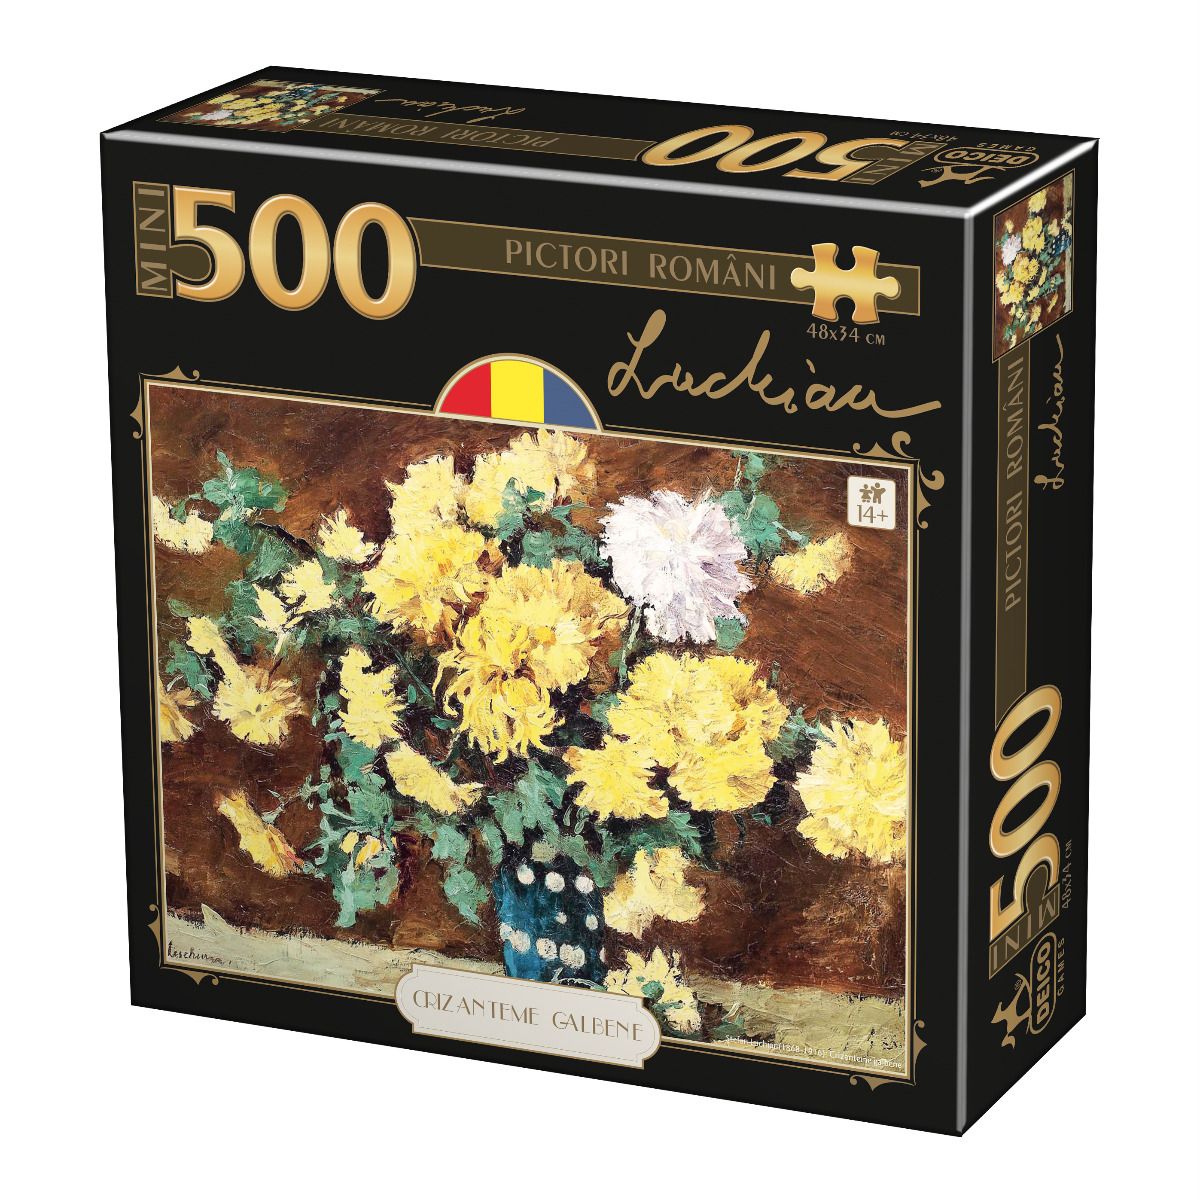 Puzzle Pictori romani - Luchian - Crizanteme Galbene - 500 piese | Deico Games